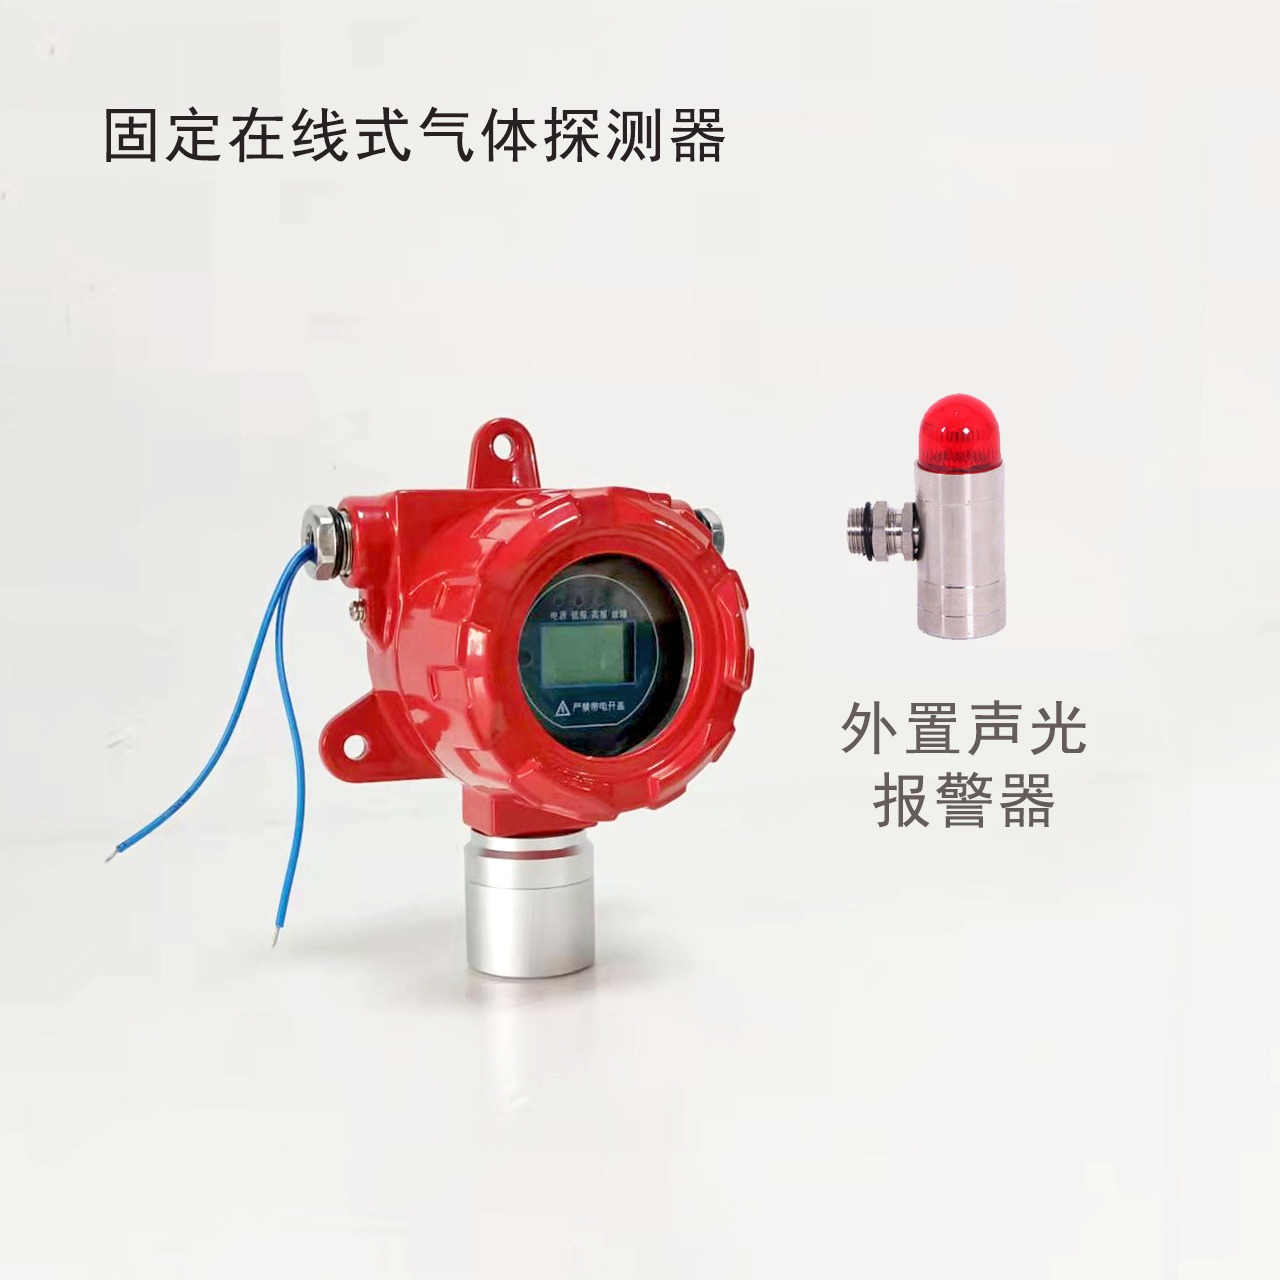 煤焦油气体报警器 有毒性气体检测设备 0-1000ppm 如特安防图片